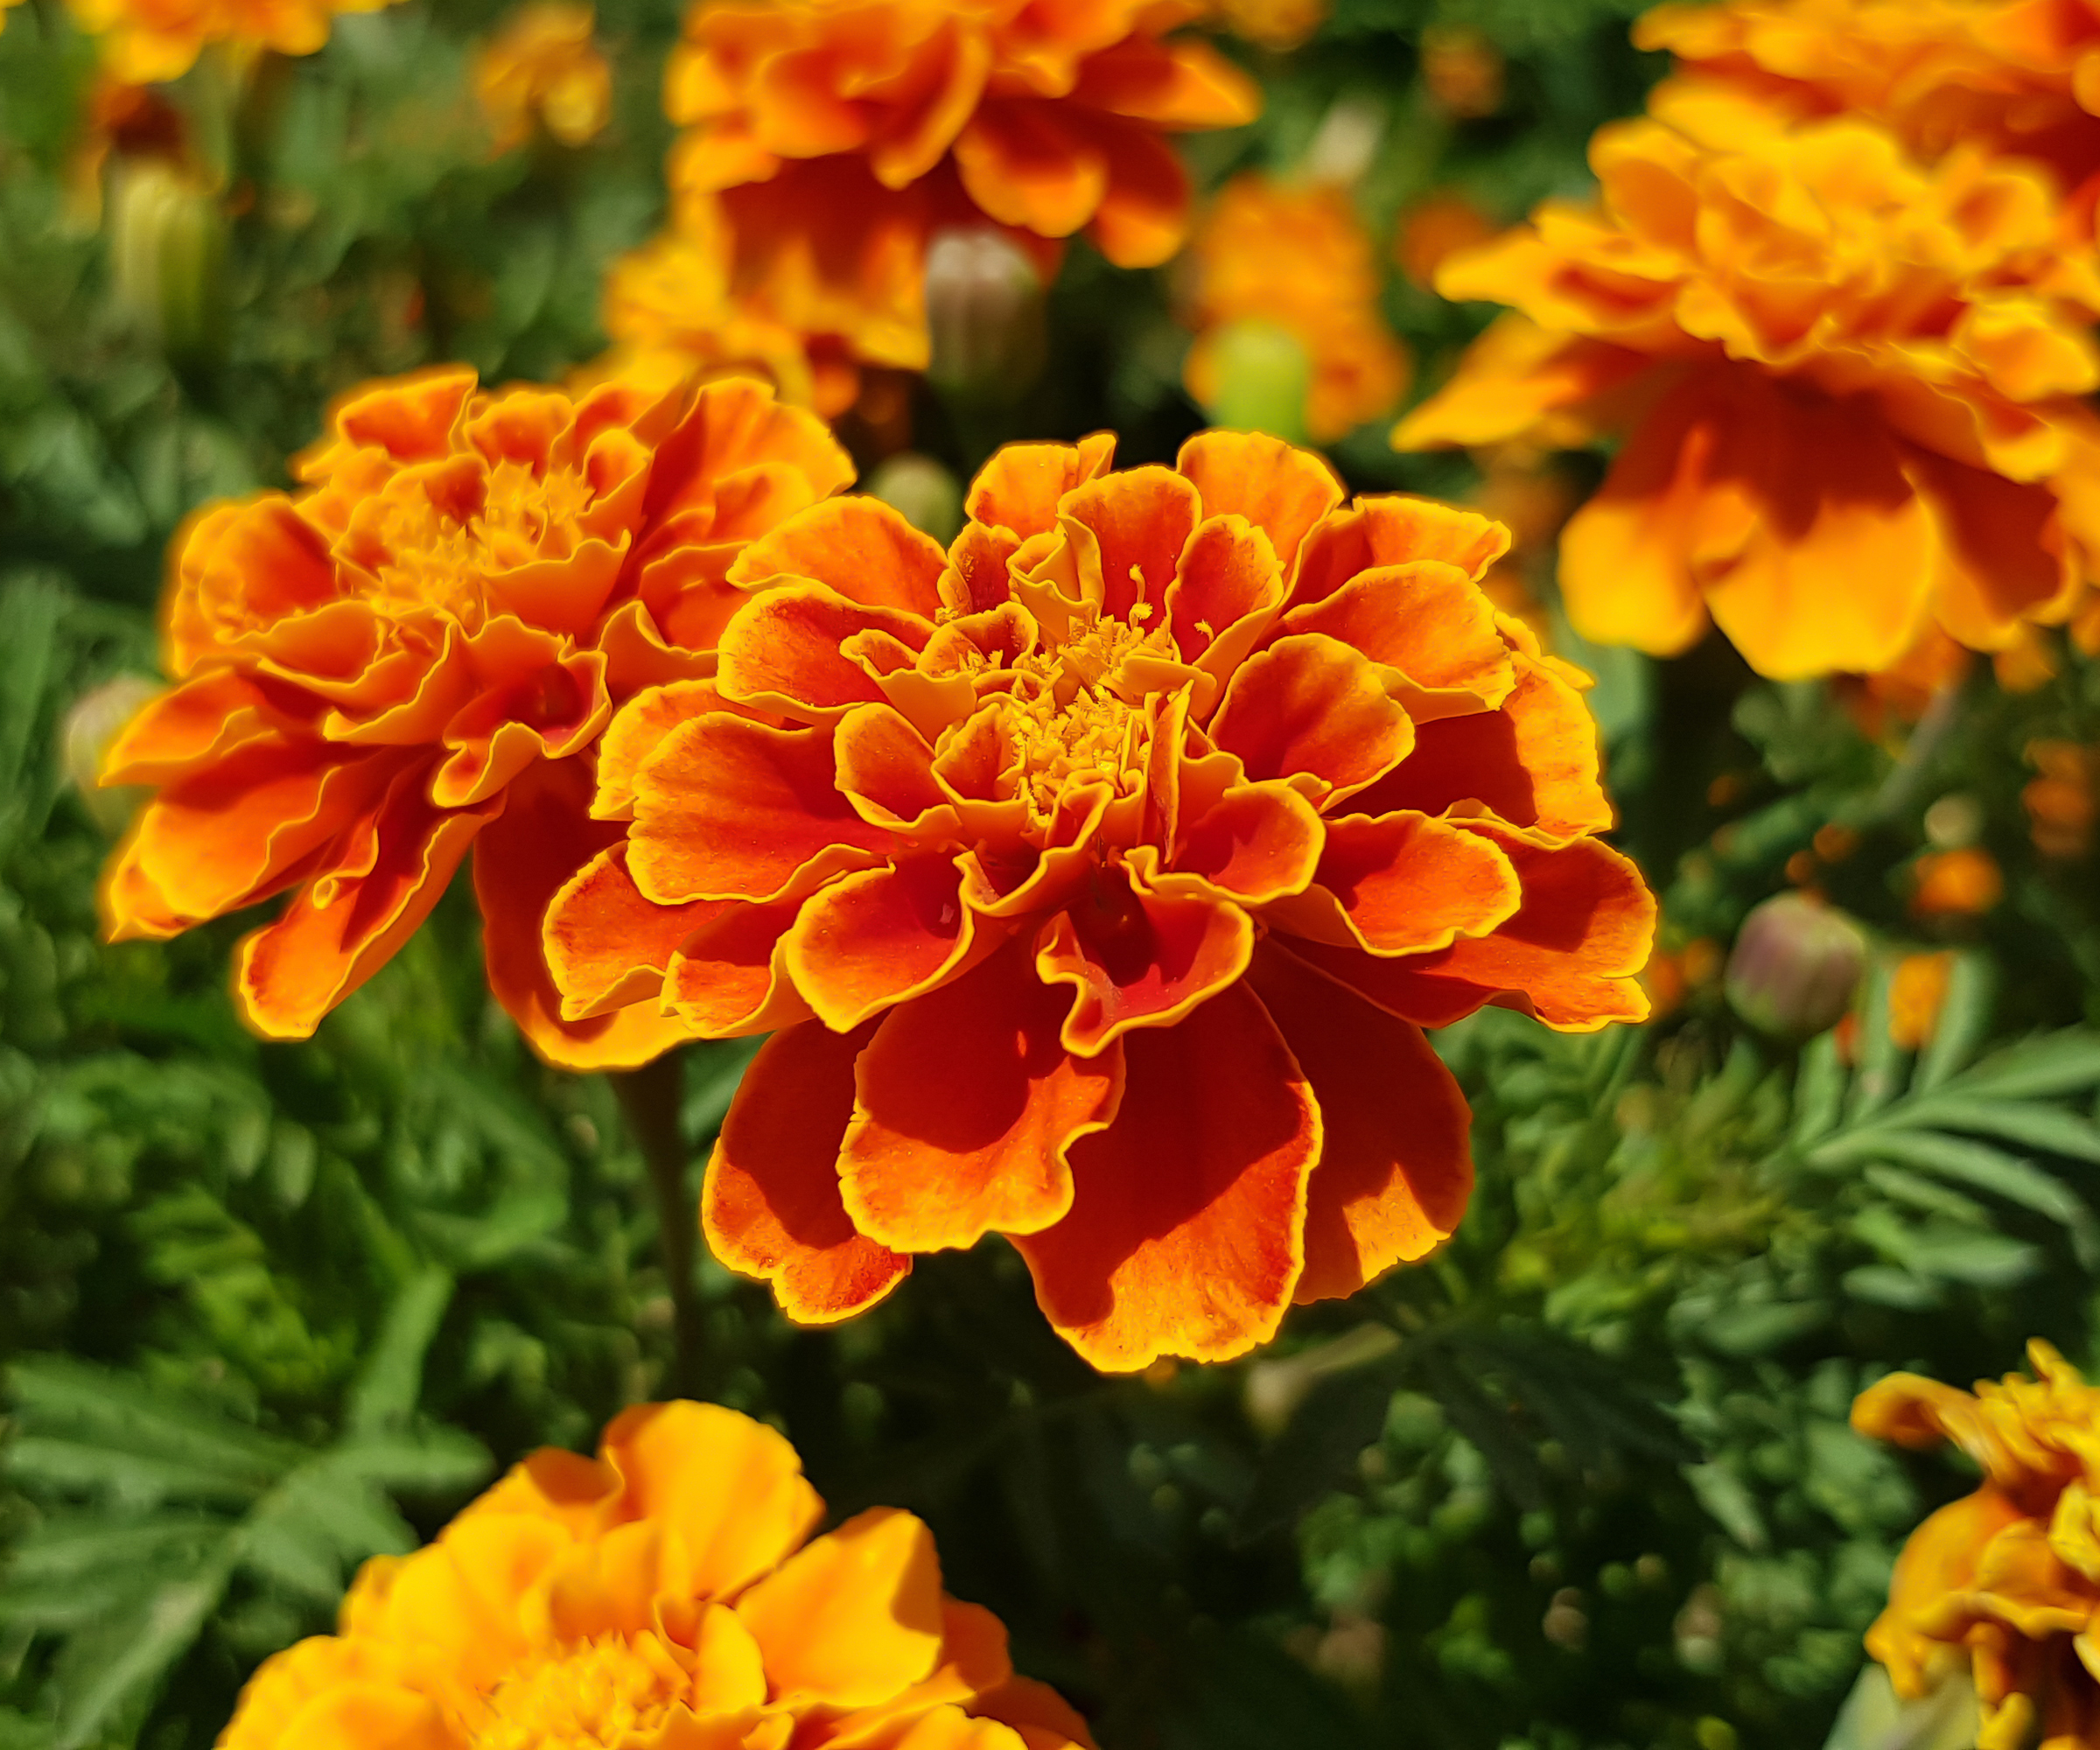 Orange French marigolds